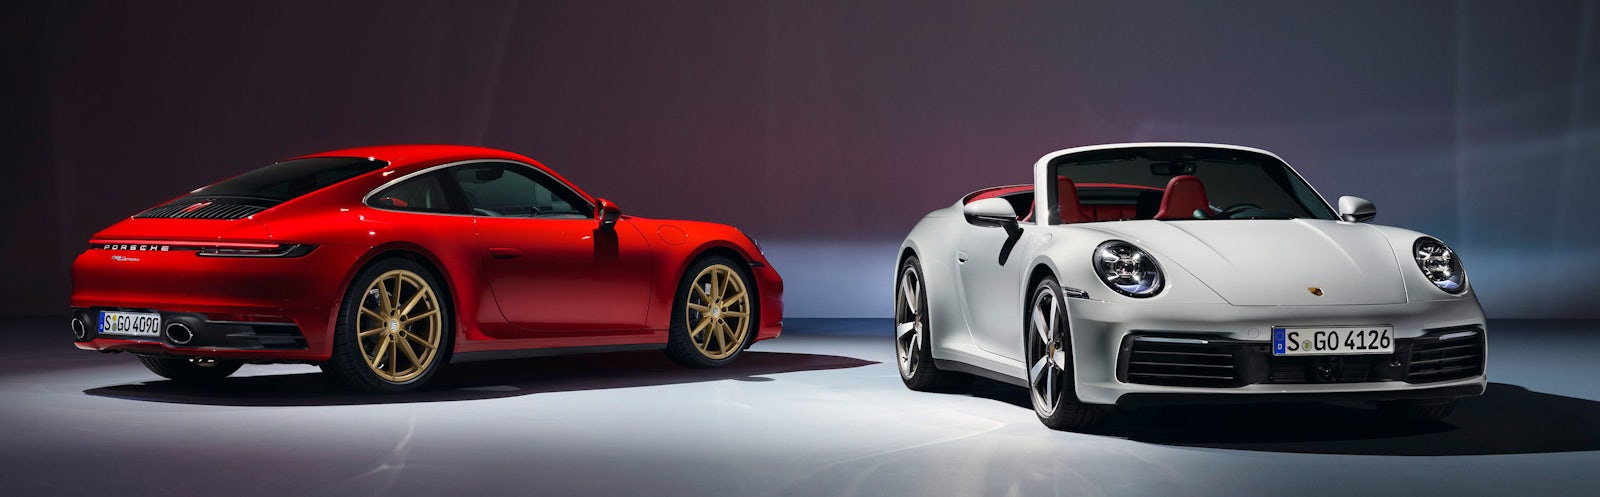 Porsche 911 19 Preise Technische Daten Verkaufsstart Carwow De